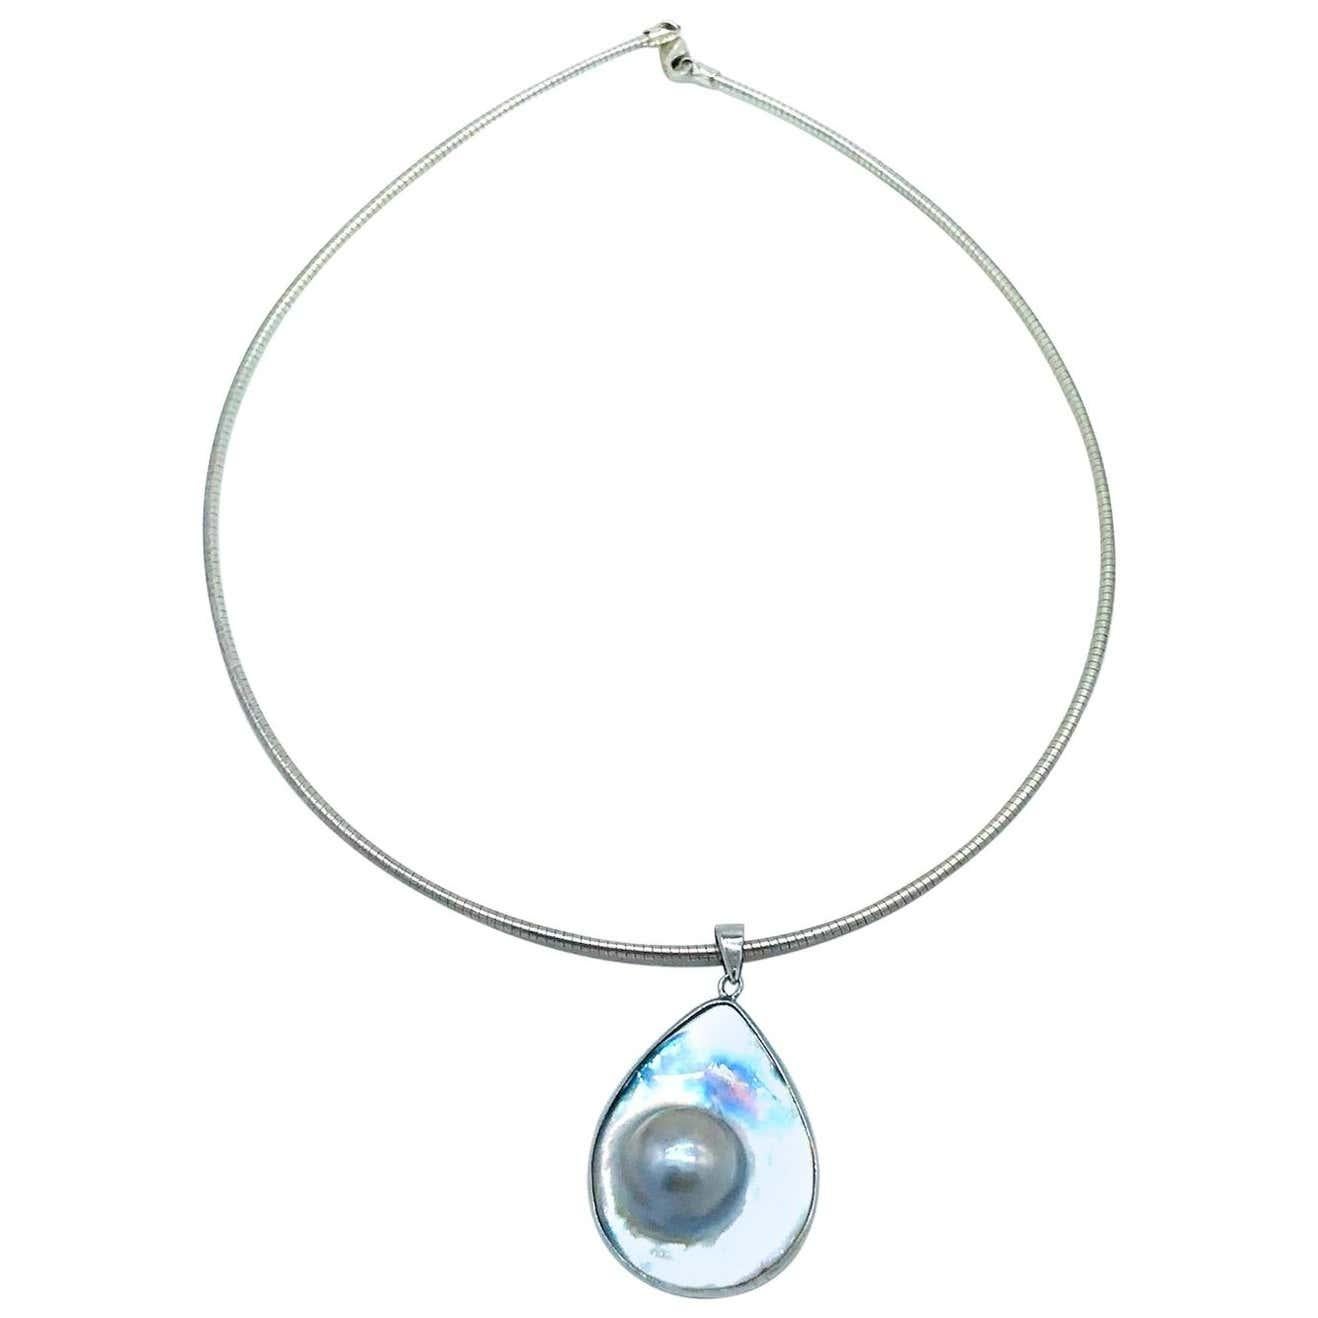 Nacre, fil de fer pour collier de perles Mobee, pendentif
Gris lumineux, perle sertie dans une goutte en forme de poire de près de 1-3/4 x 1 pouce, sertie dans une lunette.
Le fil de cou est un fil arrondi de 1,90 mm, d'une longueur de 18